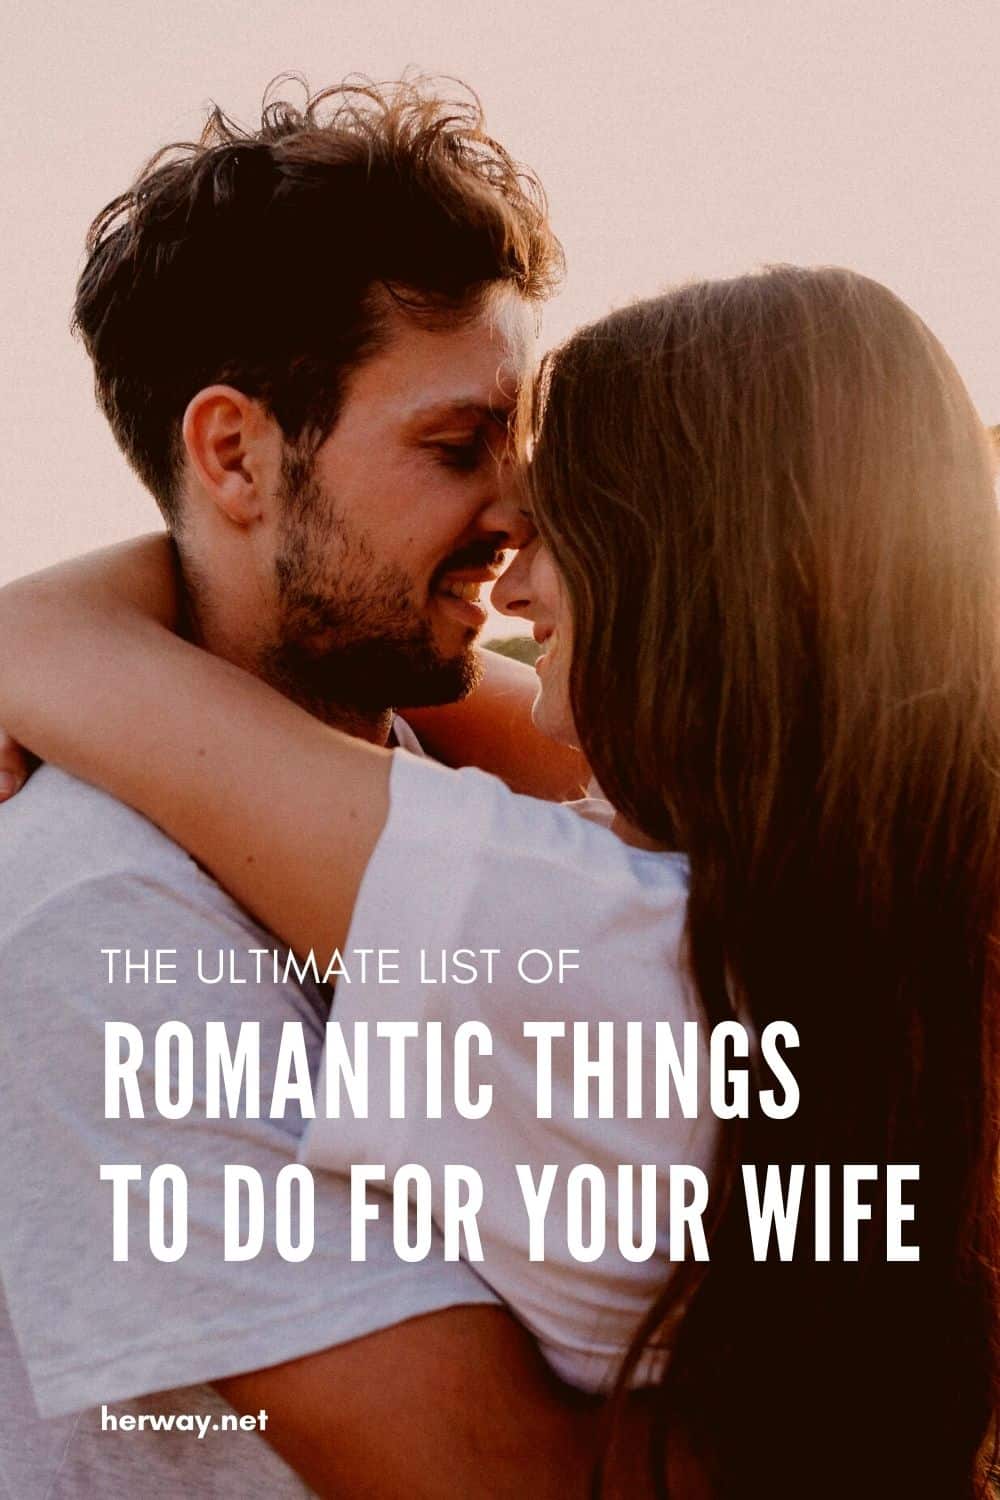 La lista definitiva de cosas románticas para hacer a tu mujer